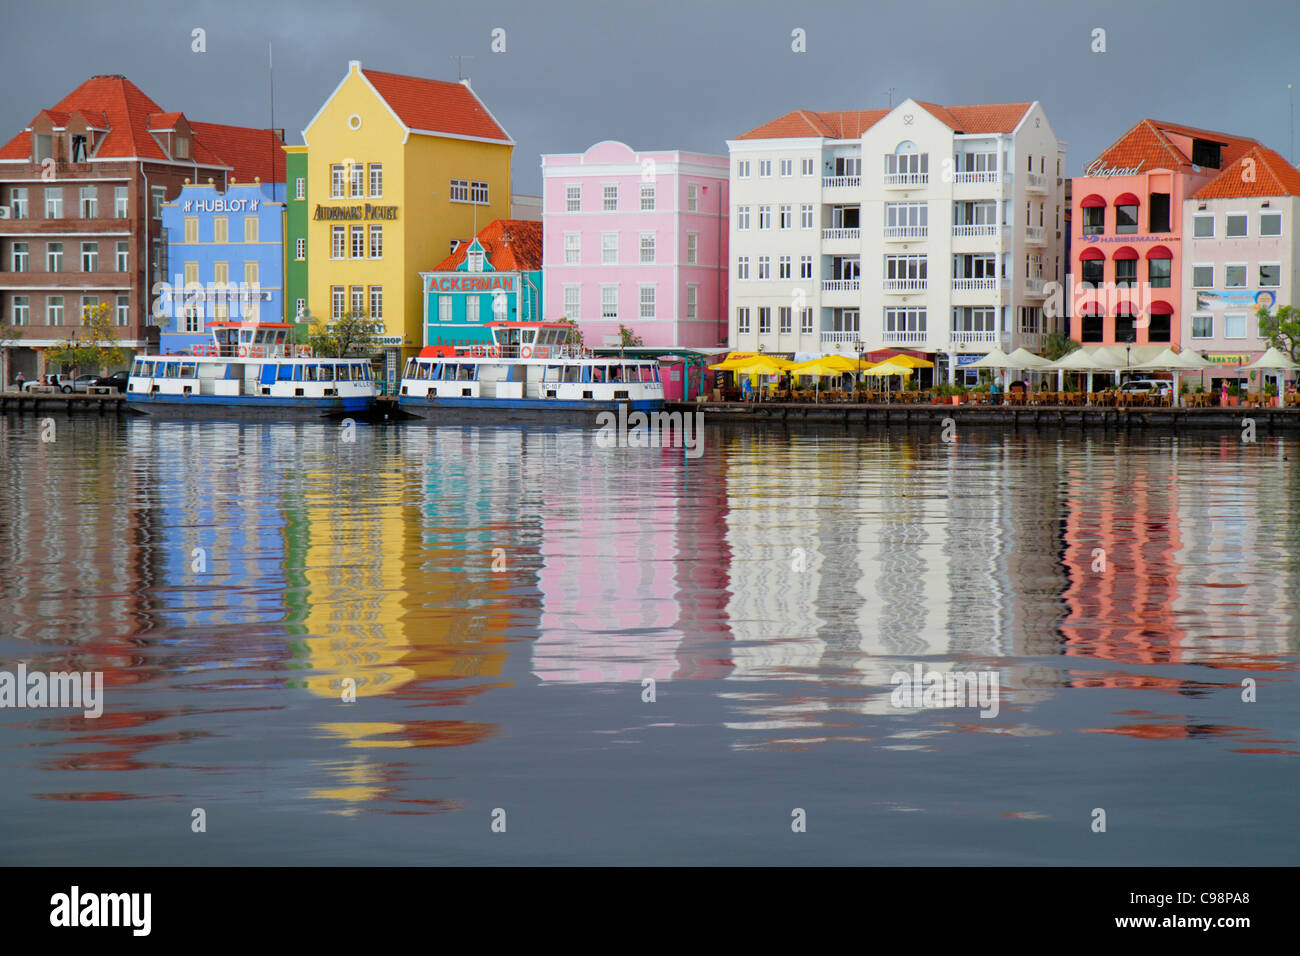 Willemstad Curaçao,pays-Bas Petites Antilles Leeward,Iles ABC,Punda,St. Sint Anna Bay, Handelskade, front de mer, ferry gratuit, place classée au patrimoine mondial de l'UNESCO Banque D'Images